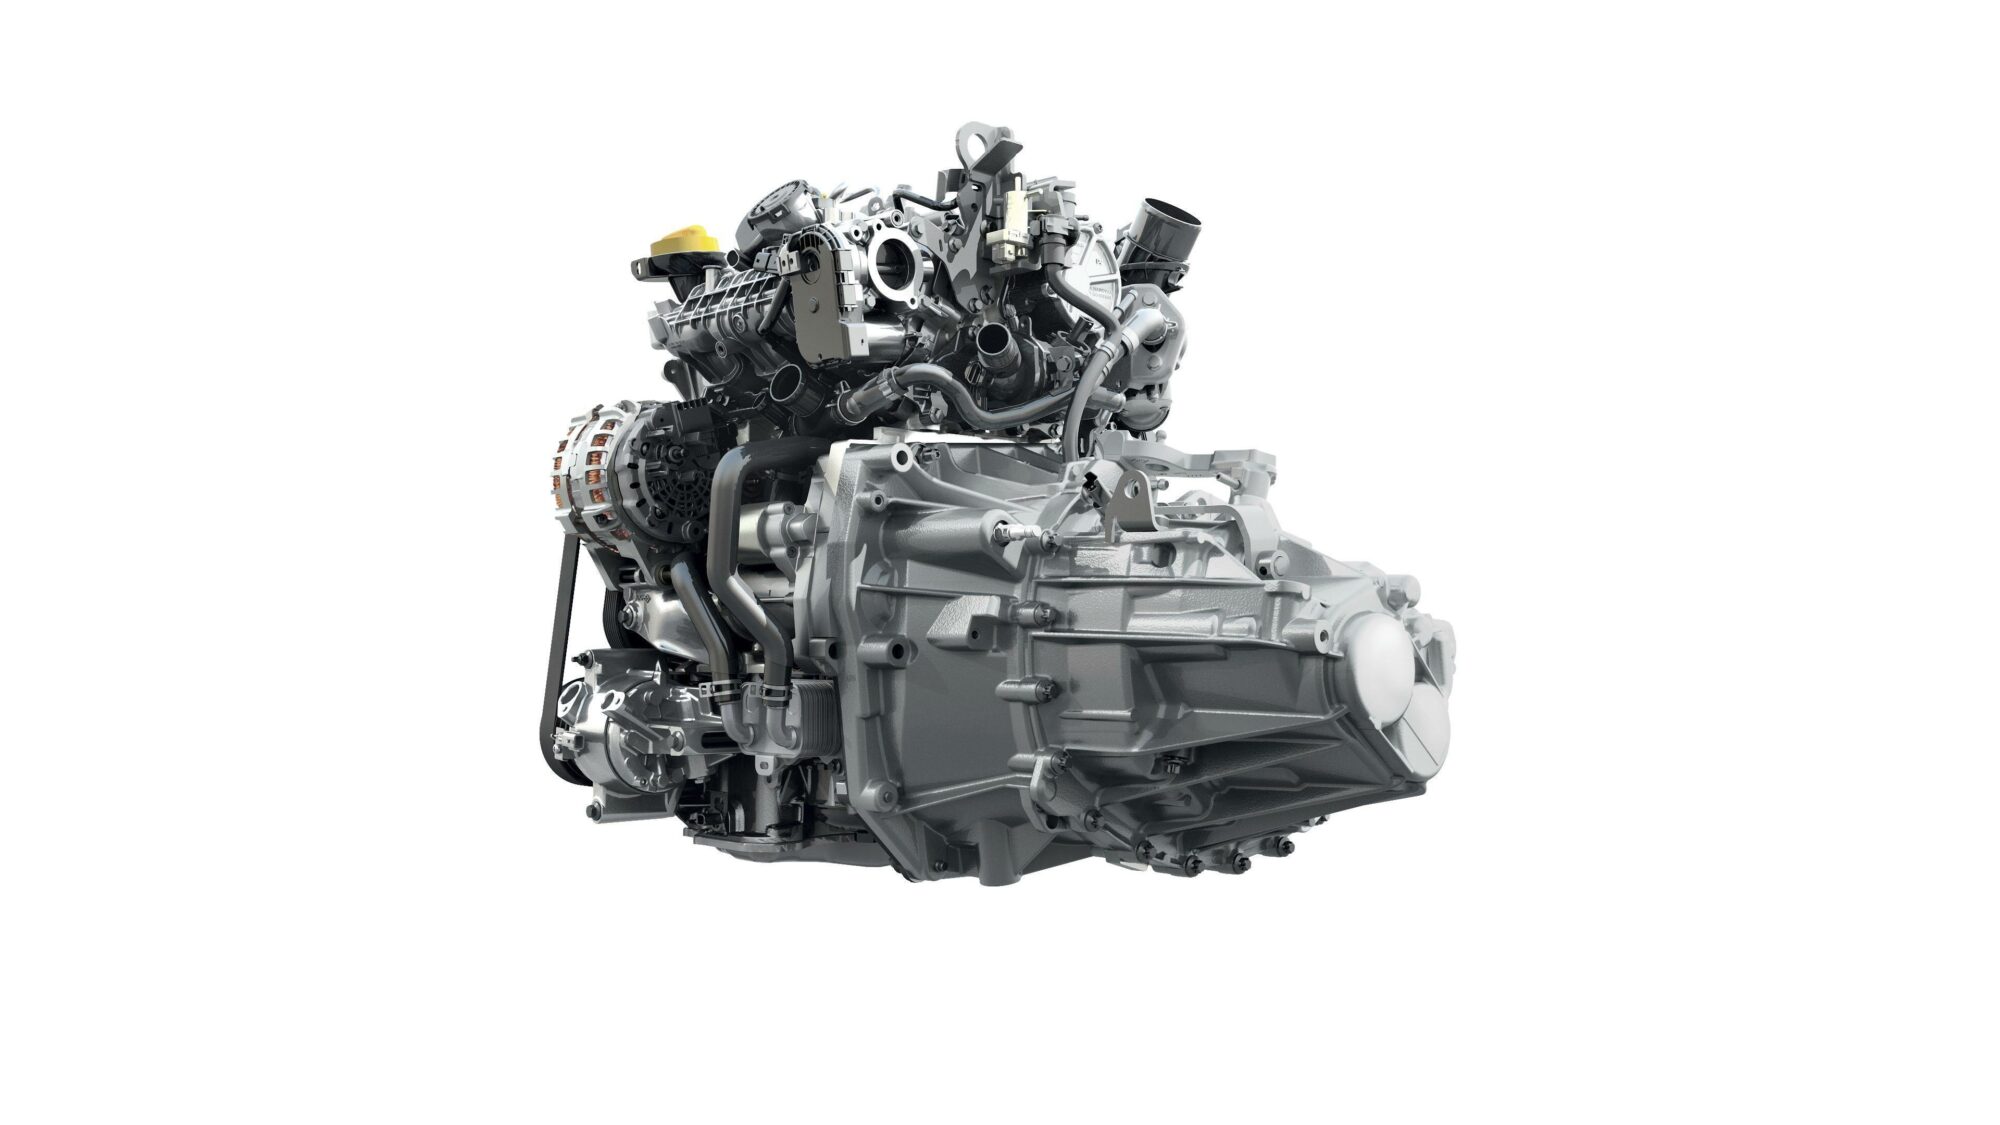 2021 - Dacia Jogger - Tce 110 engine